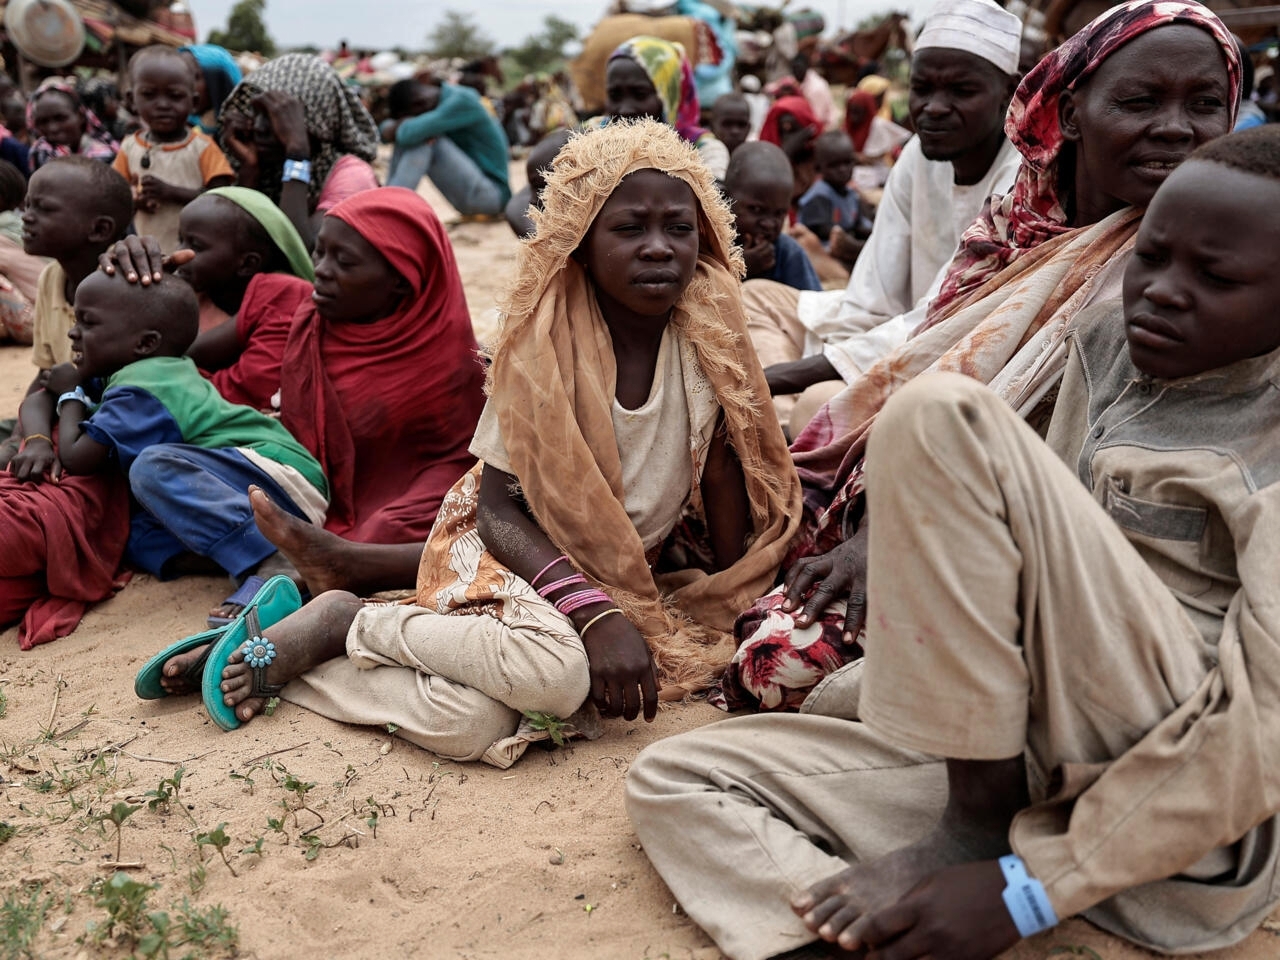 السودان على شفا الكارثة الإنسانية: مأساة الجوع تهدد حياة الملايين